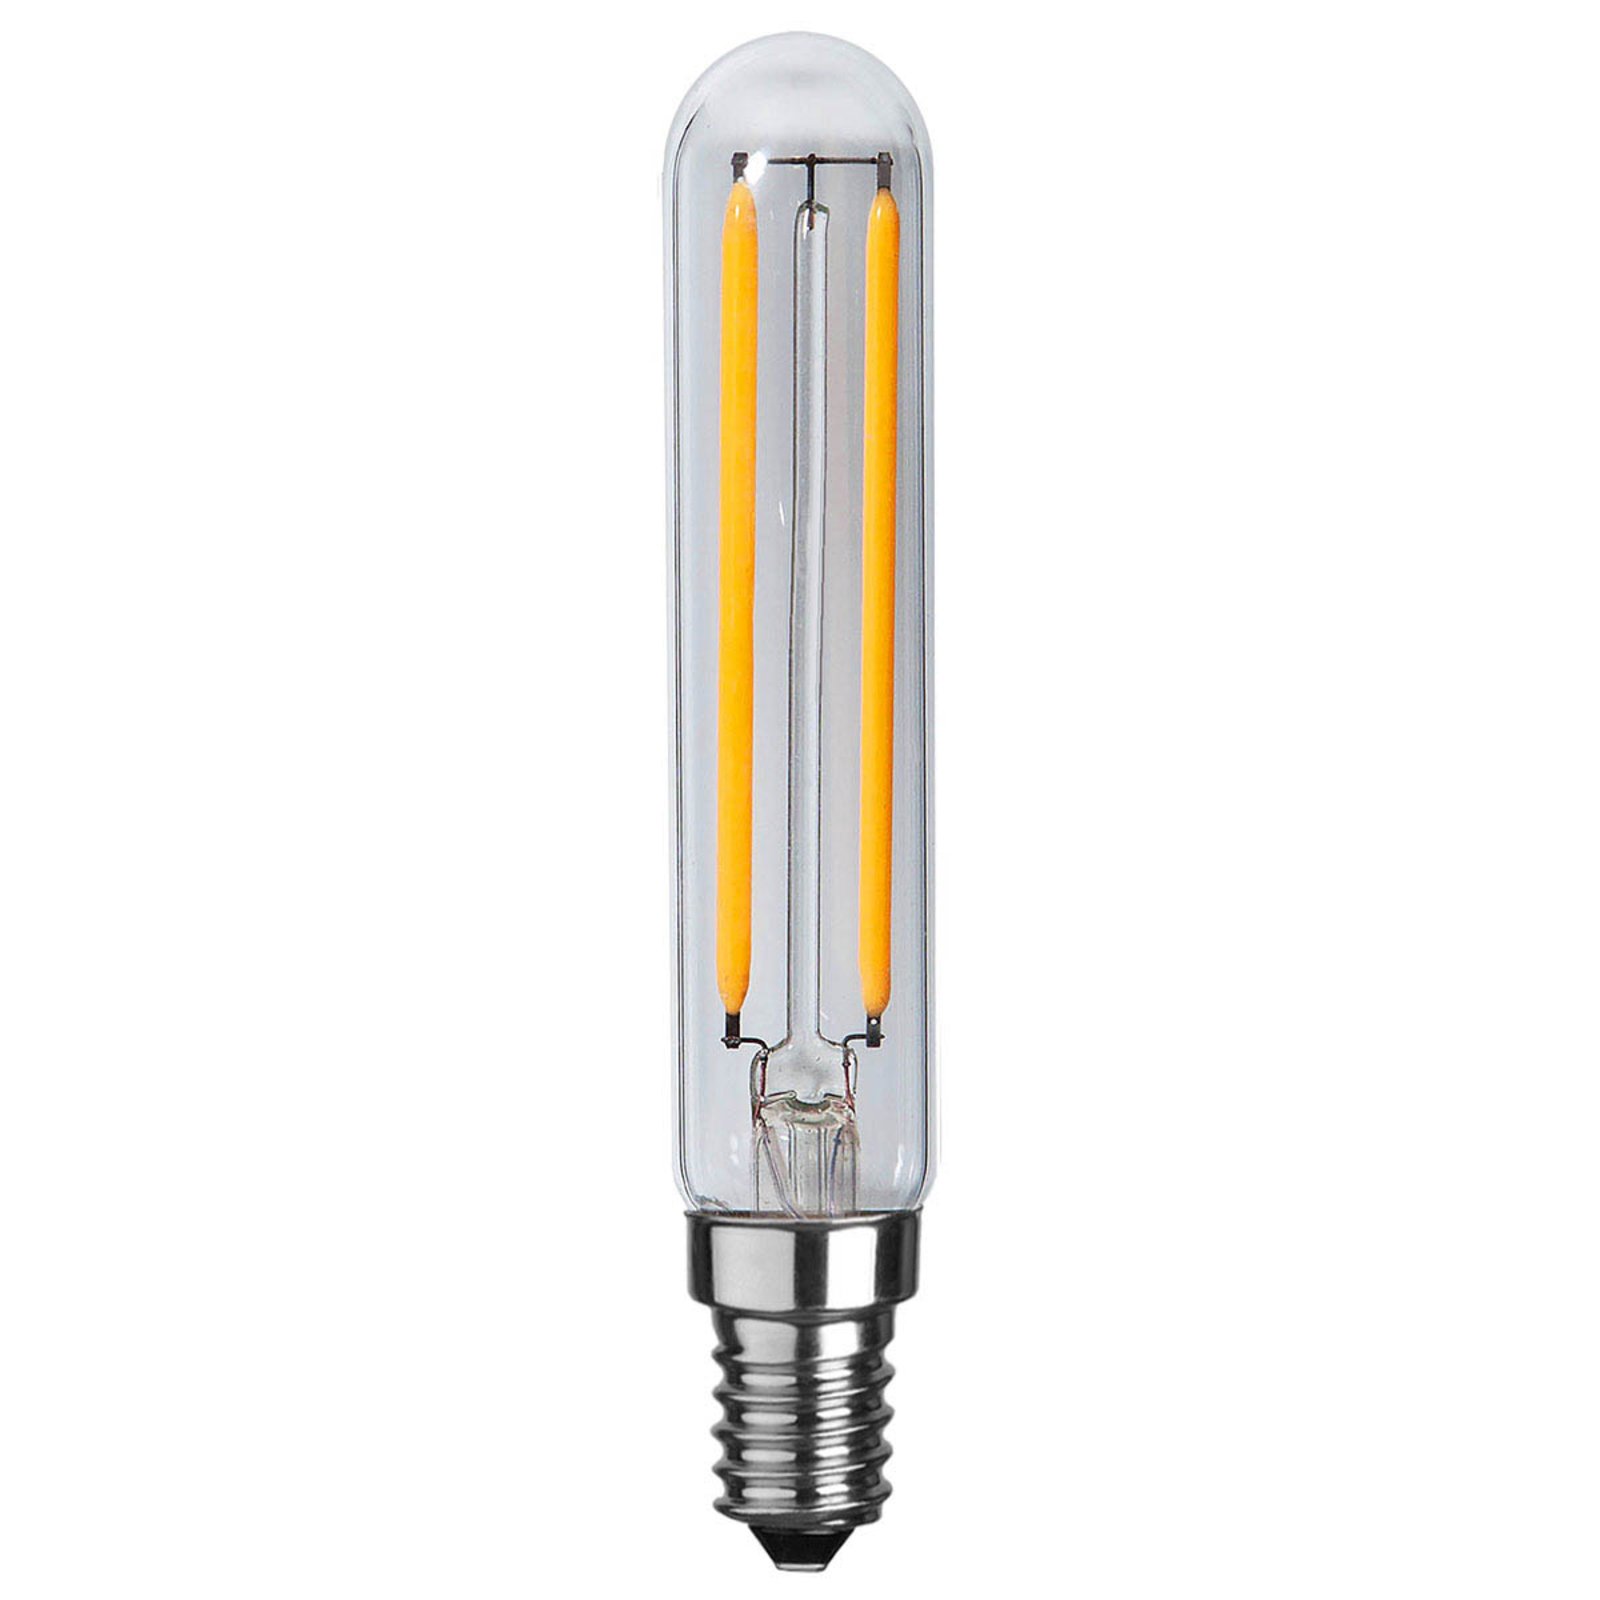 LED lamp E14 3,3W filament 2.700K Ra90 dimbaar